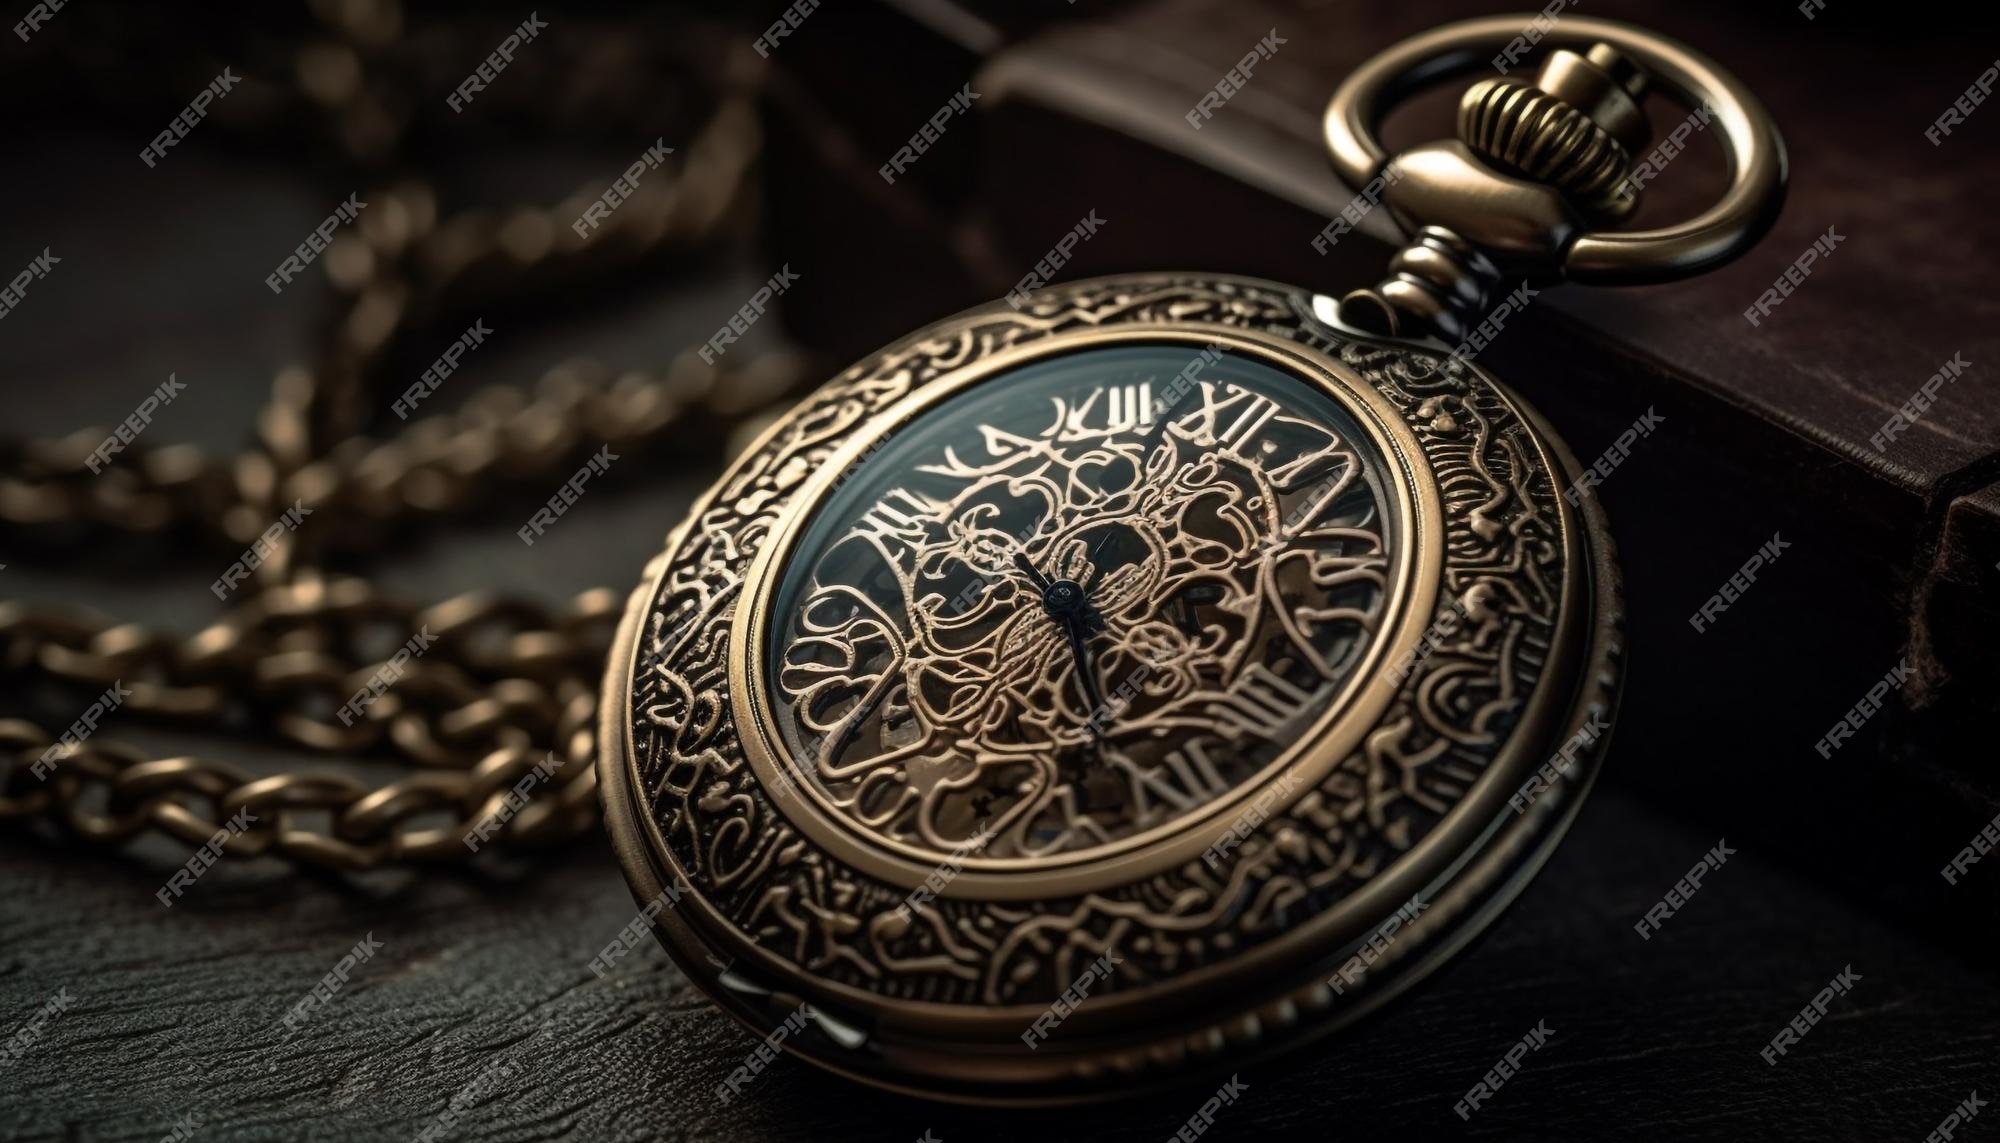 Reloj de bolsillo antiguo cadena de oro elegancia atemporal por ia | Foto Premium